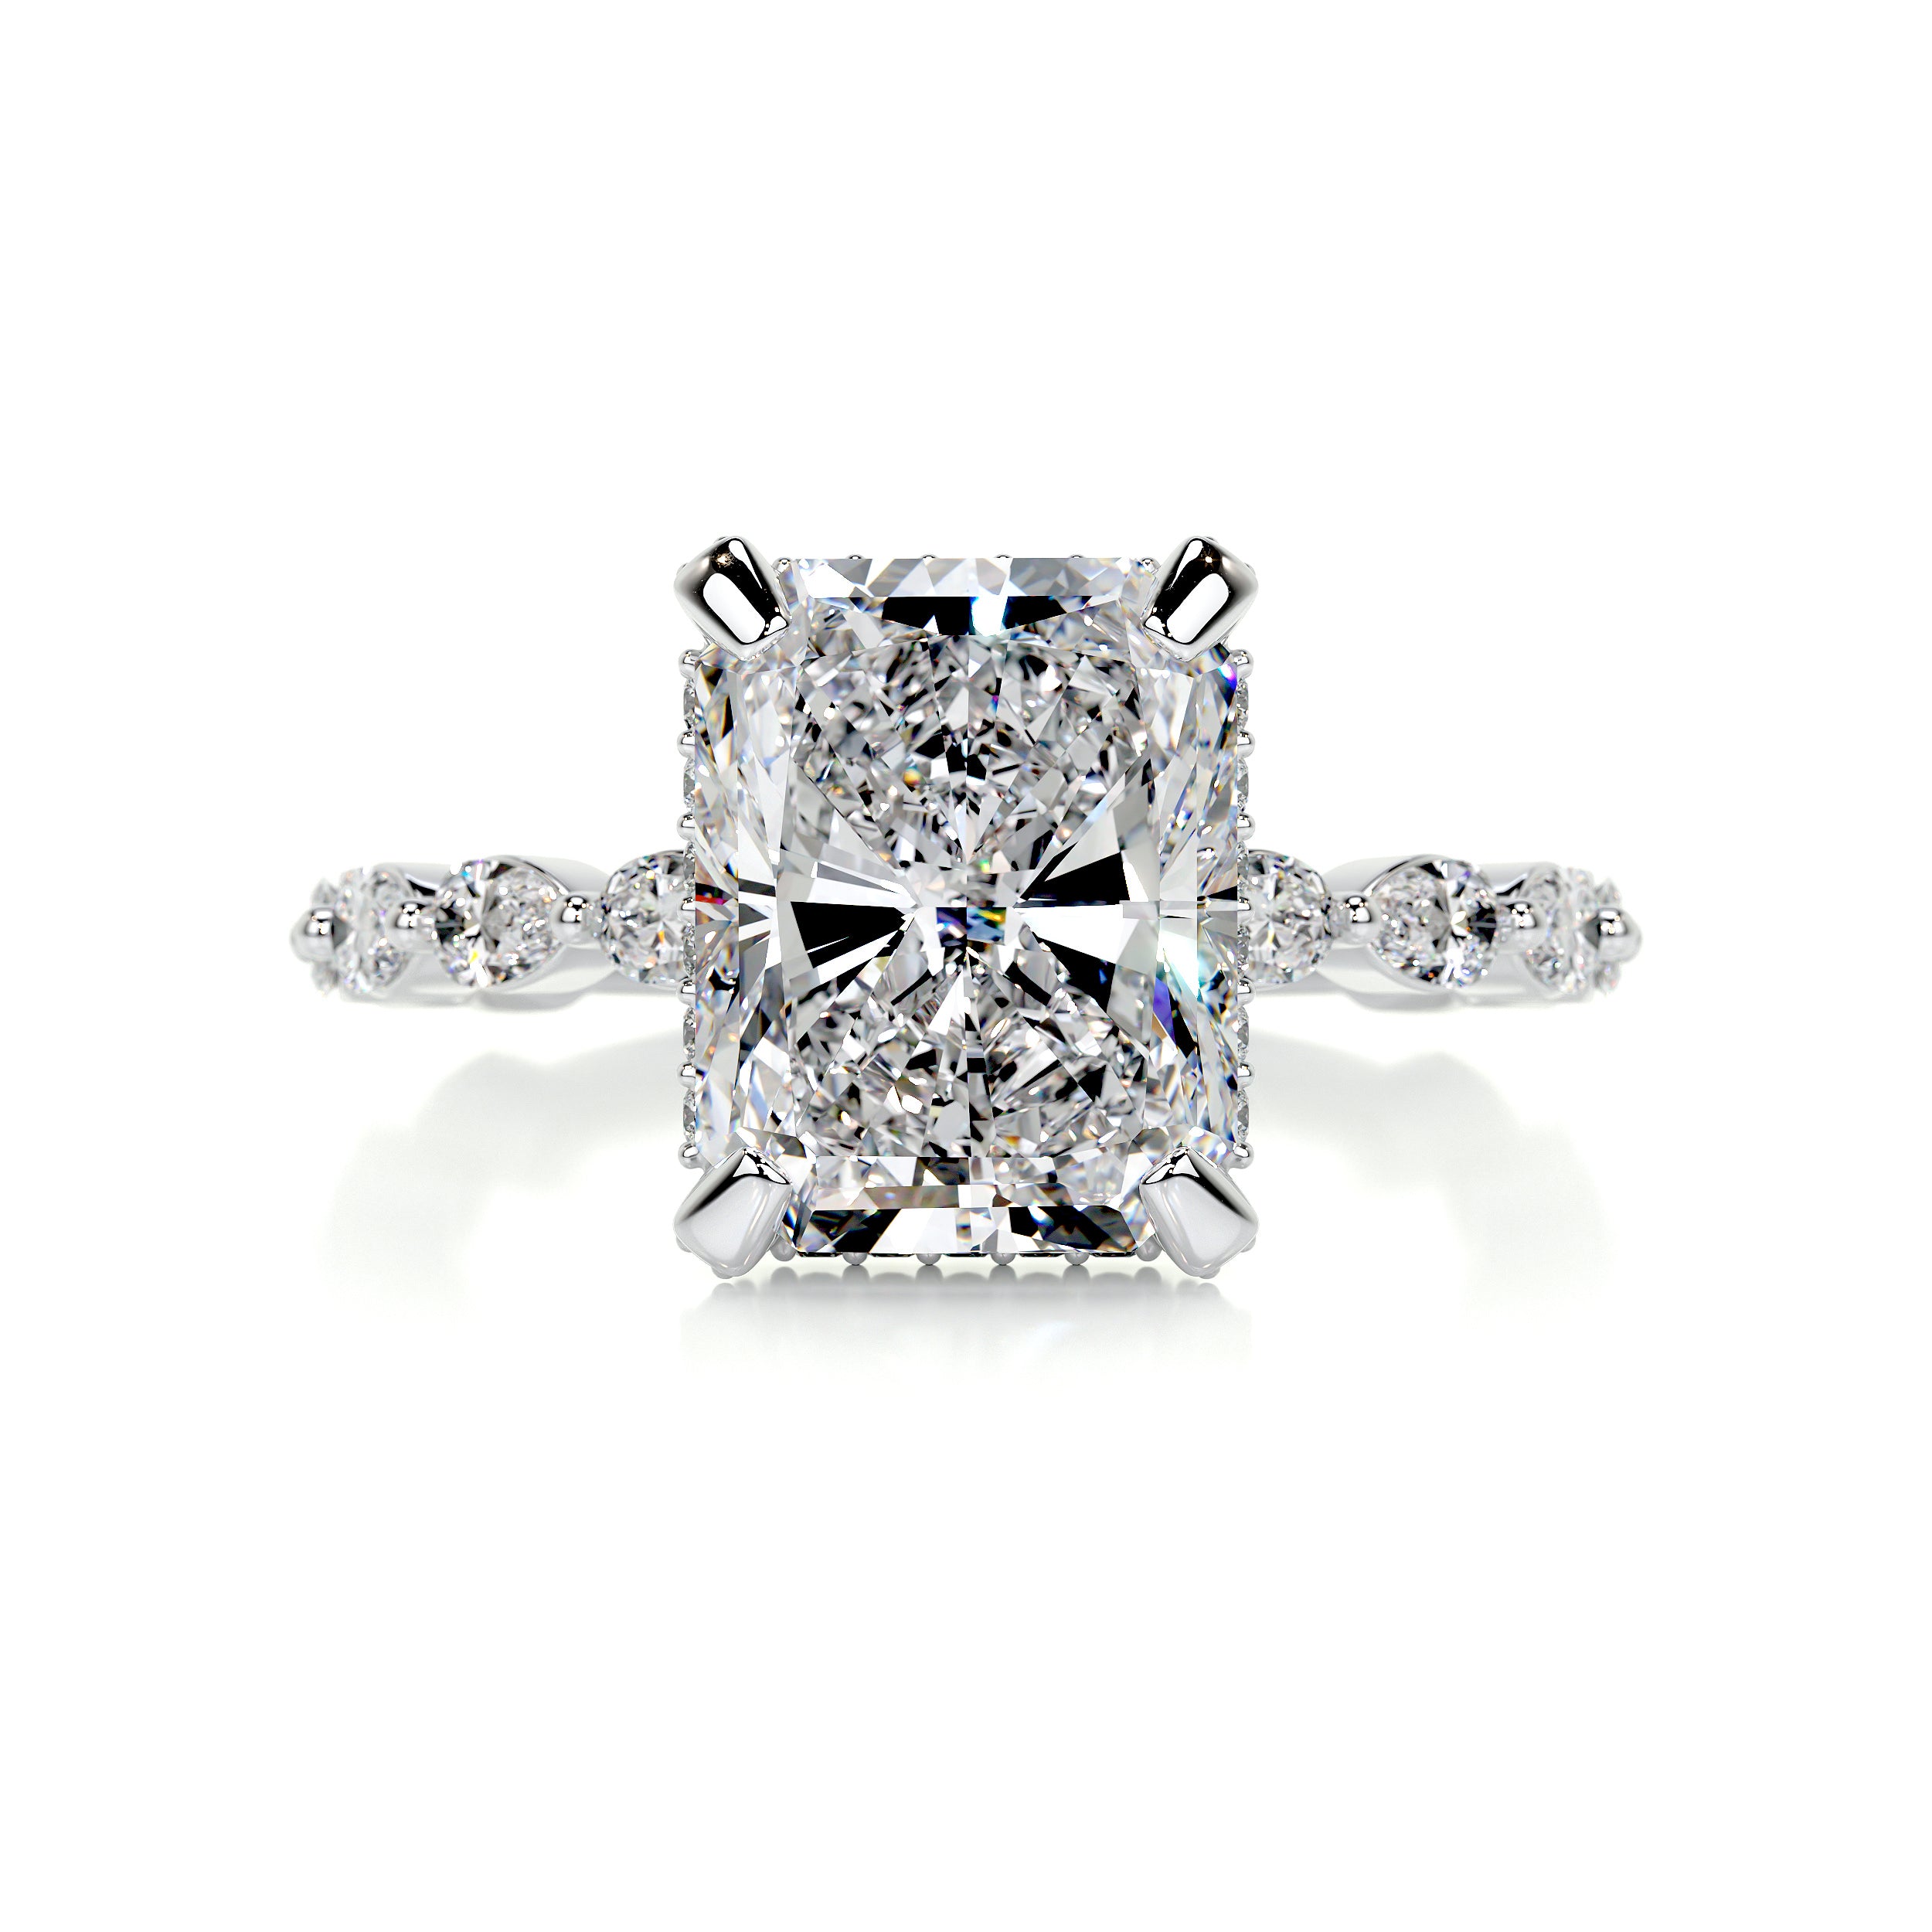 Robin Diamond Engagement Ring -14K White Gold